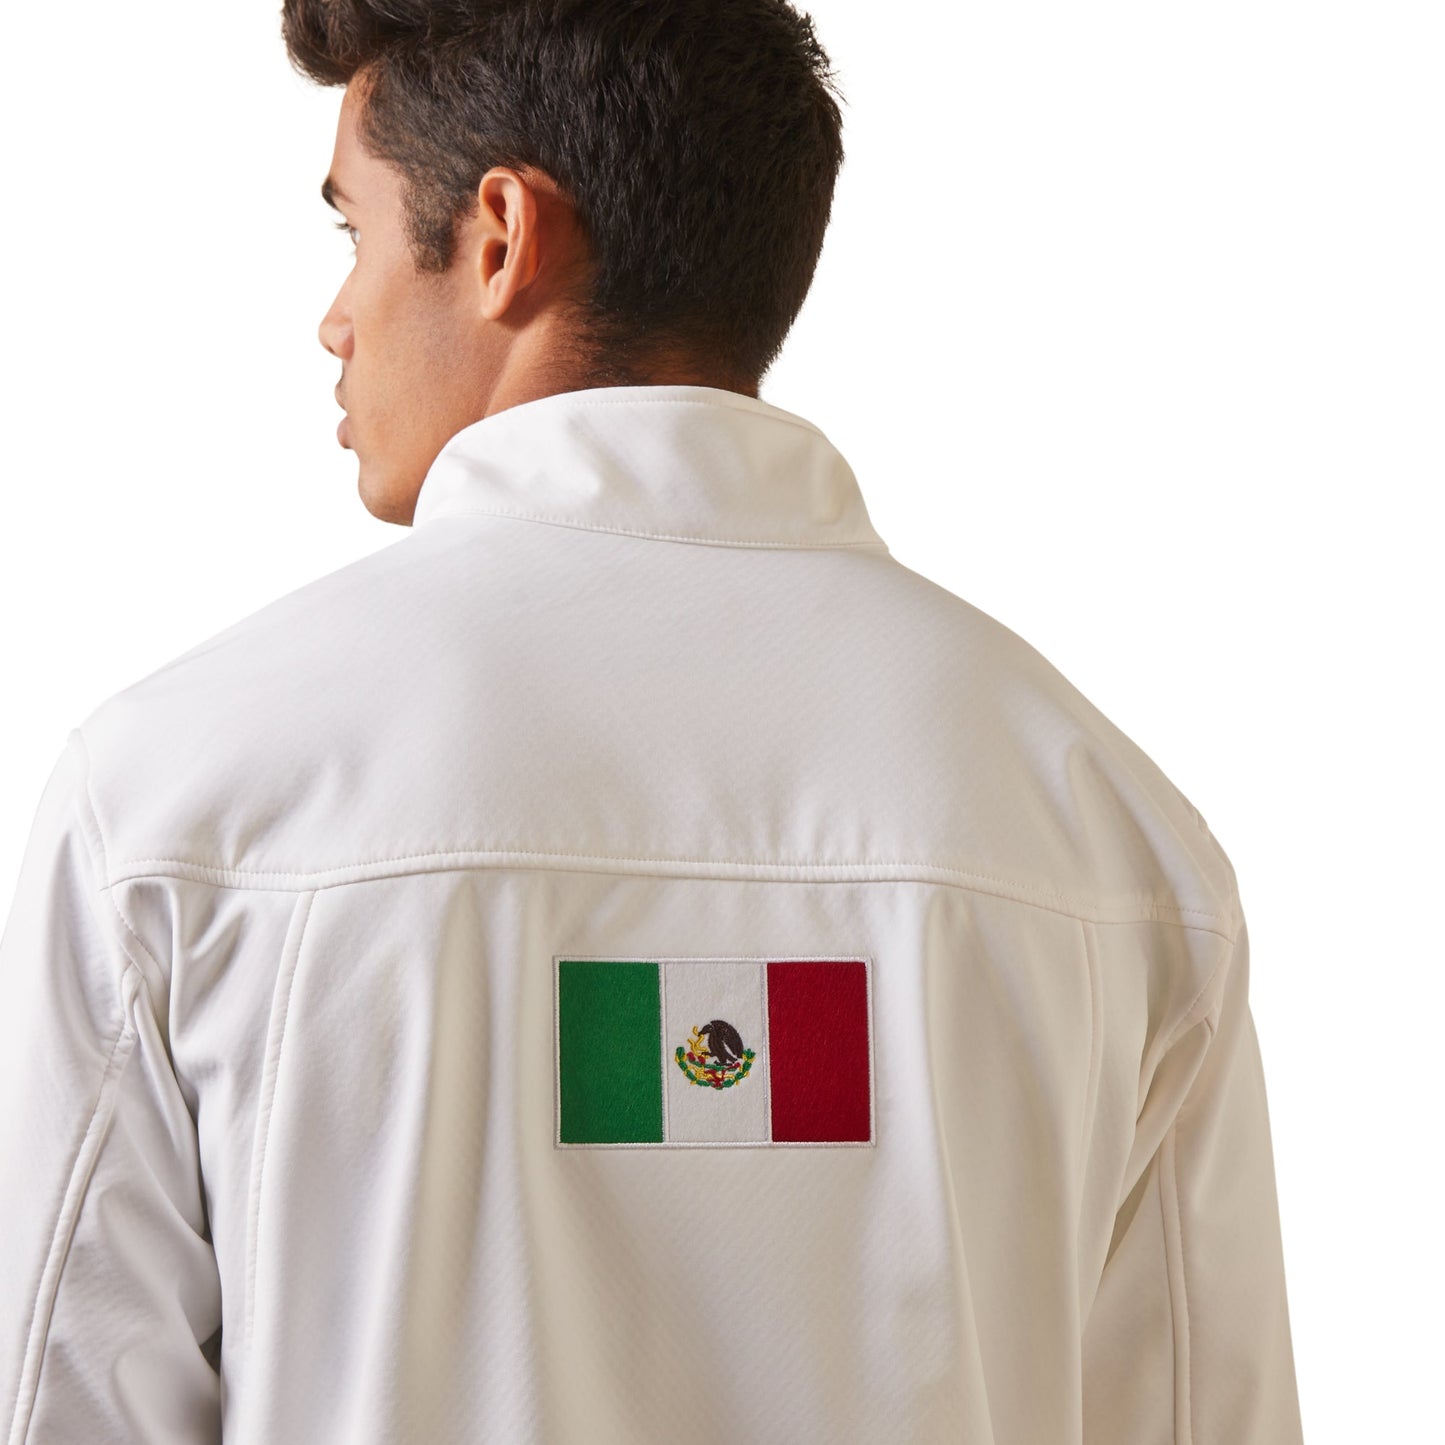 Ariat Men White Softshell Mexico Jacket